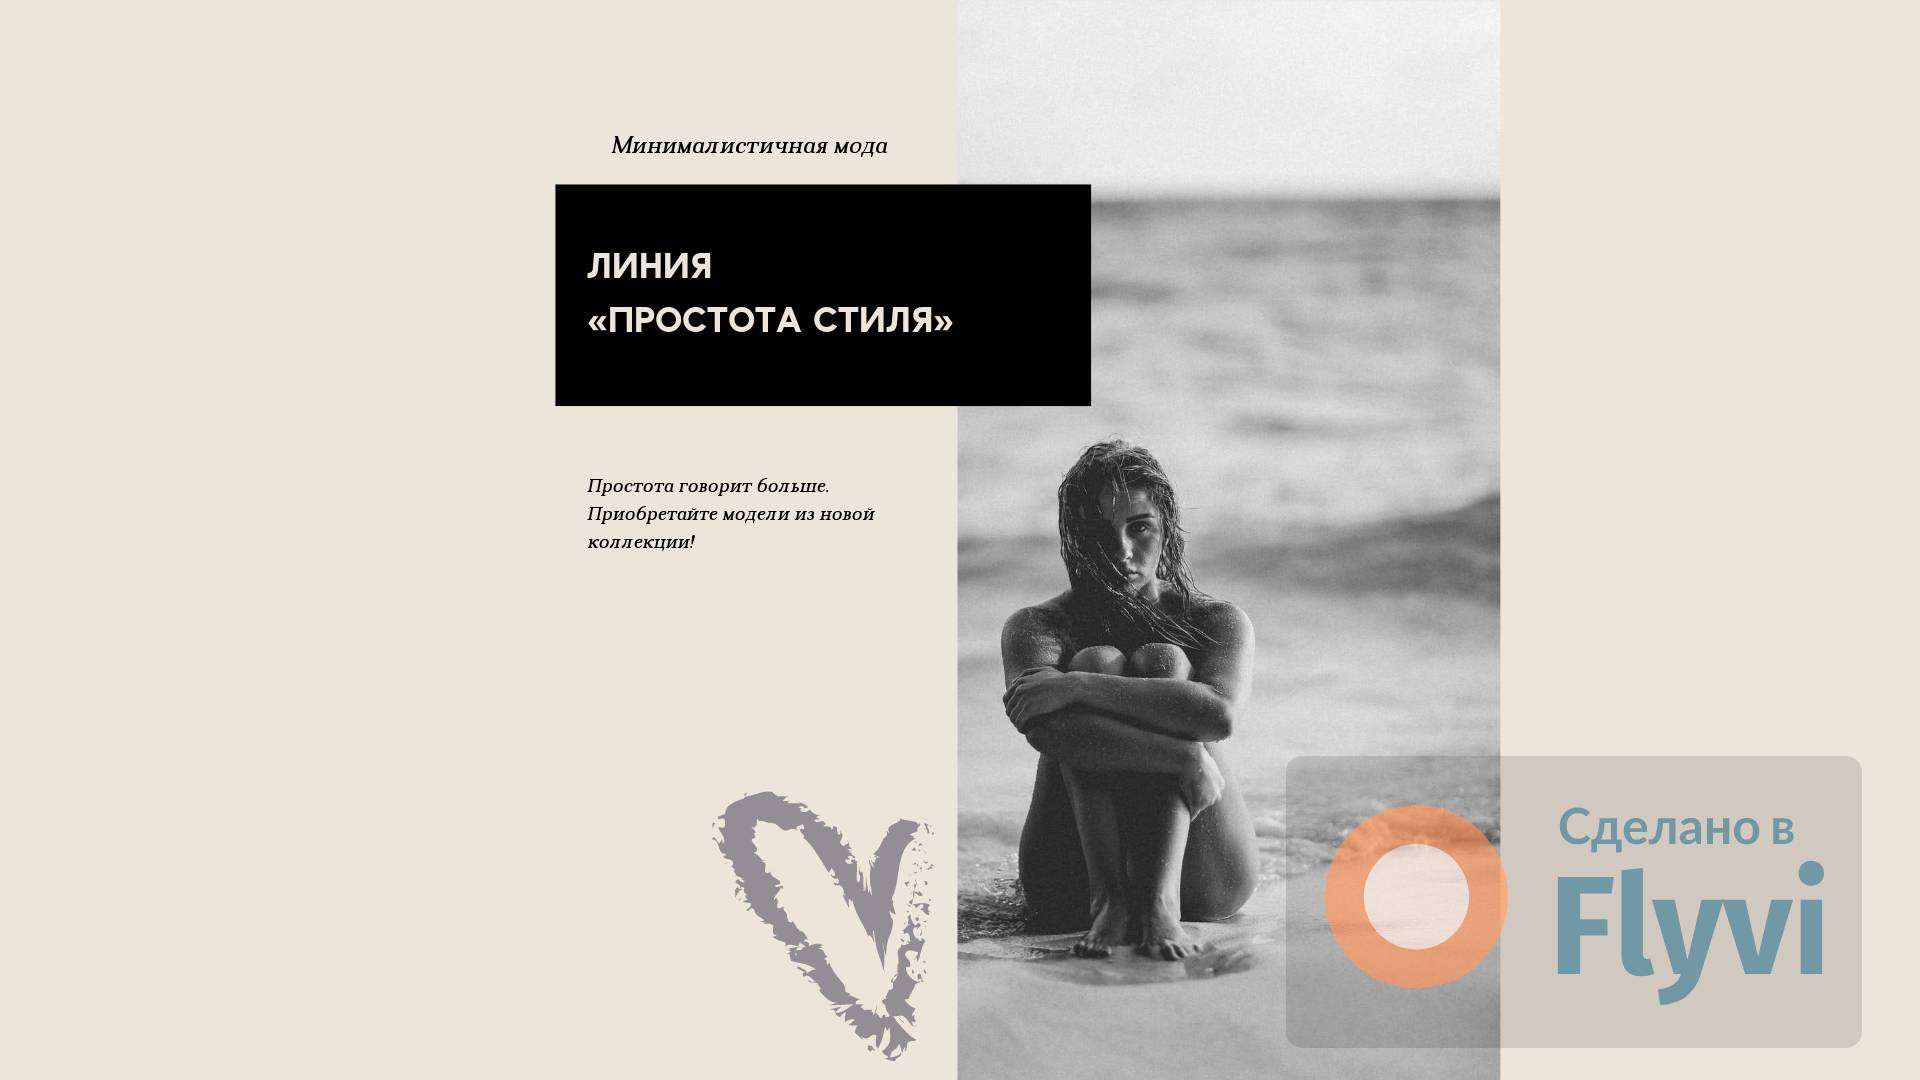 Светло-бежевый пост в стиле минимализм с черно-белым фото девушки на  морском берегу и готовым заголовком и мотивирующей цитатой | Flyvi